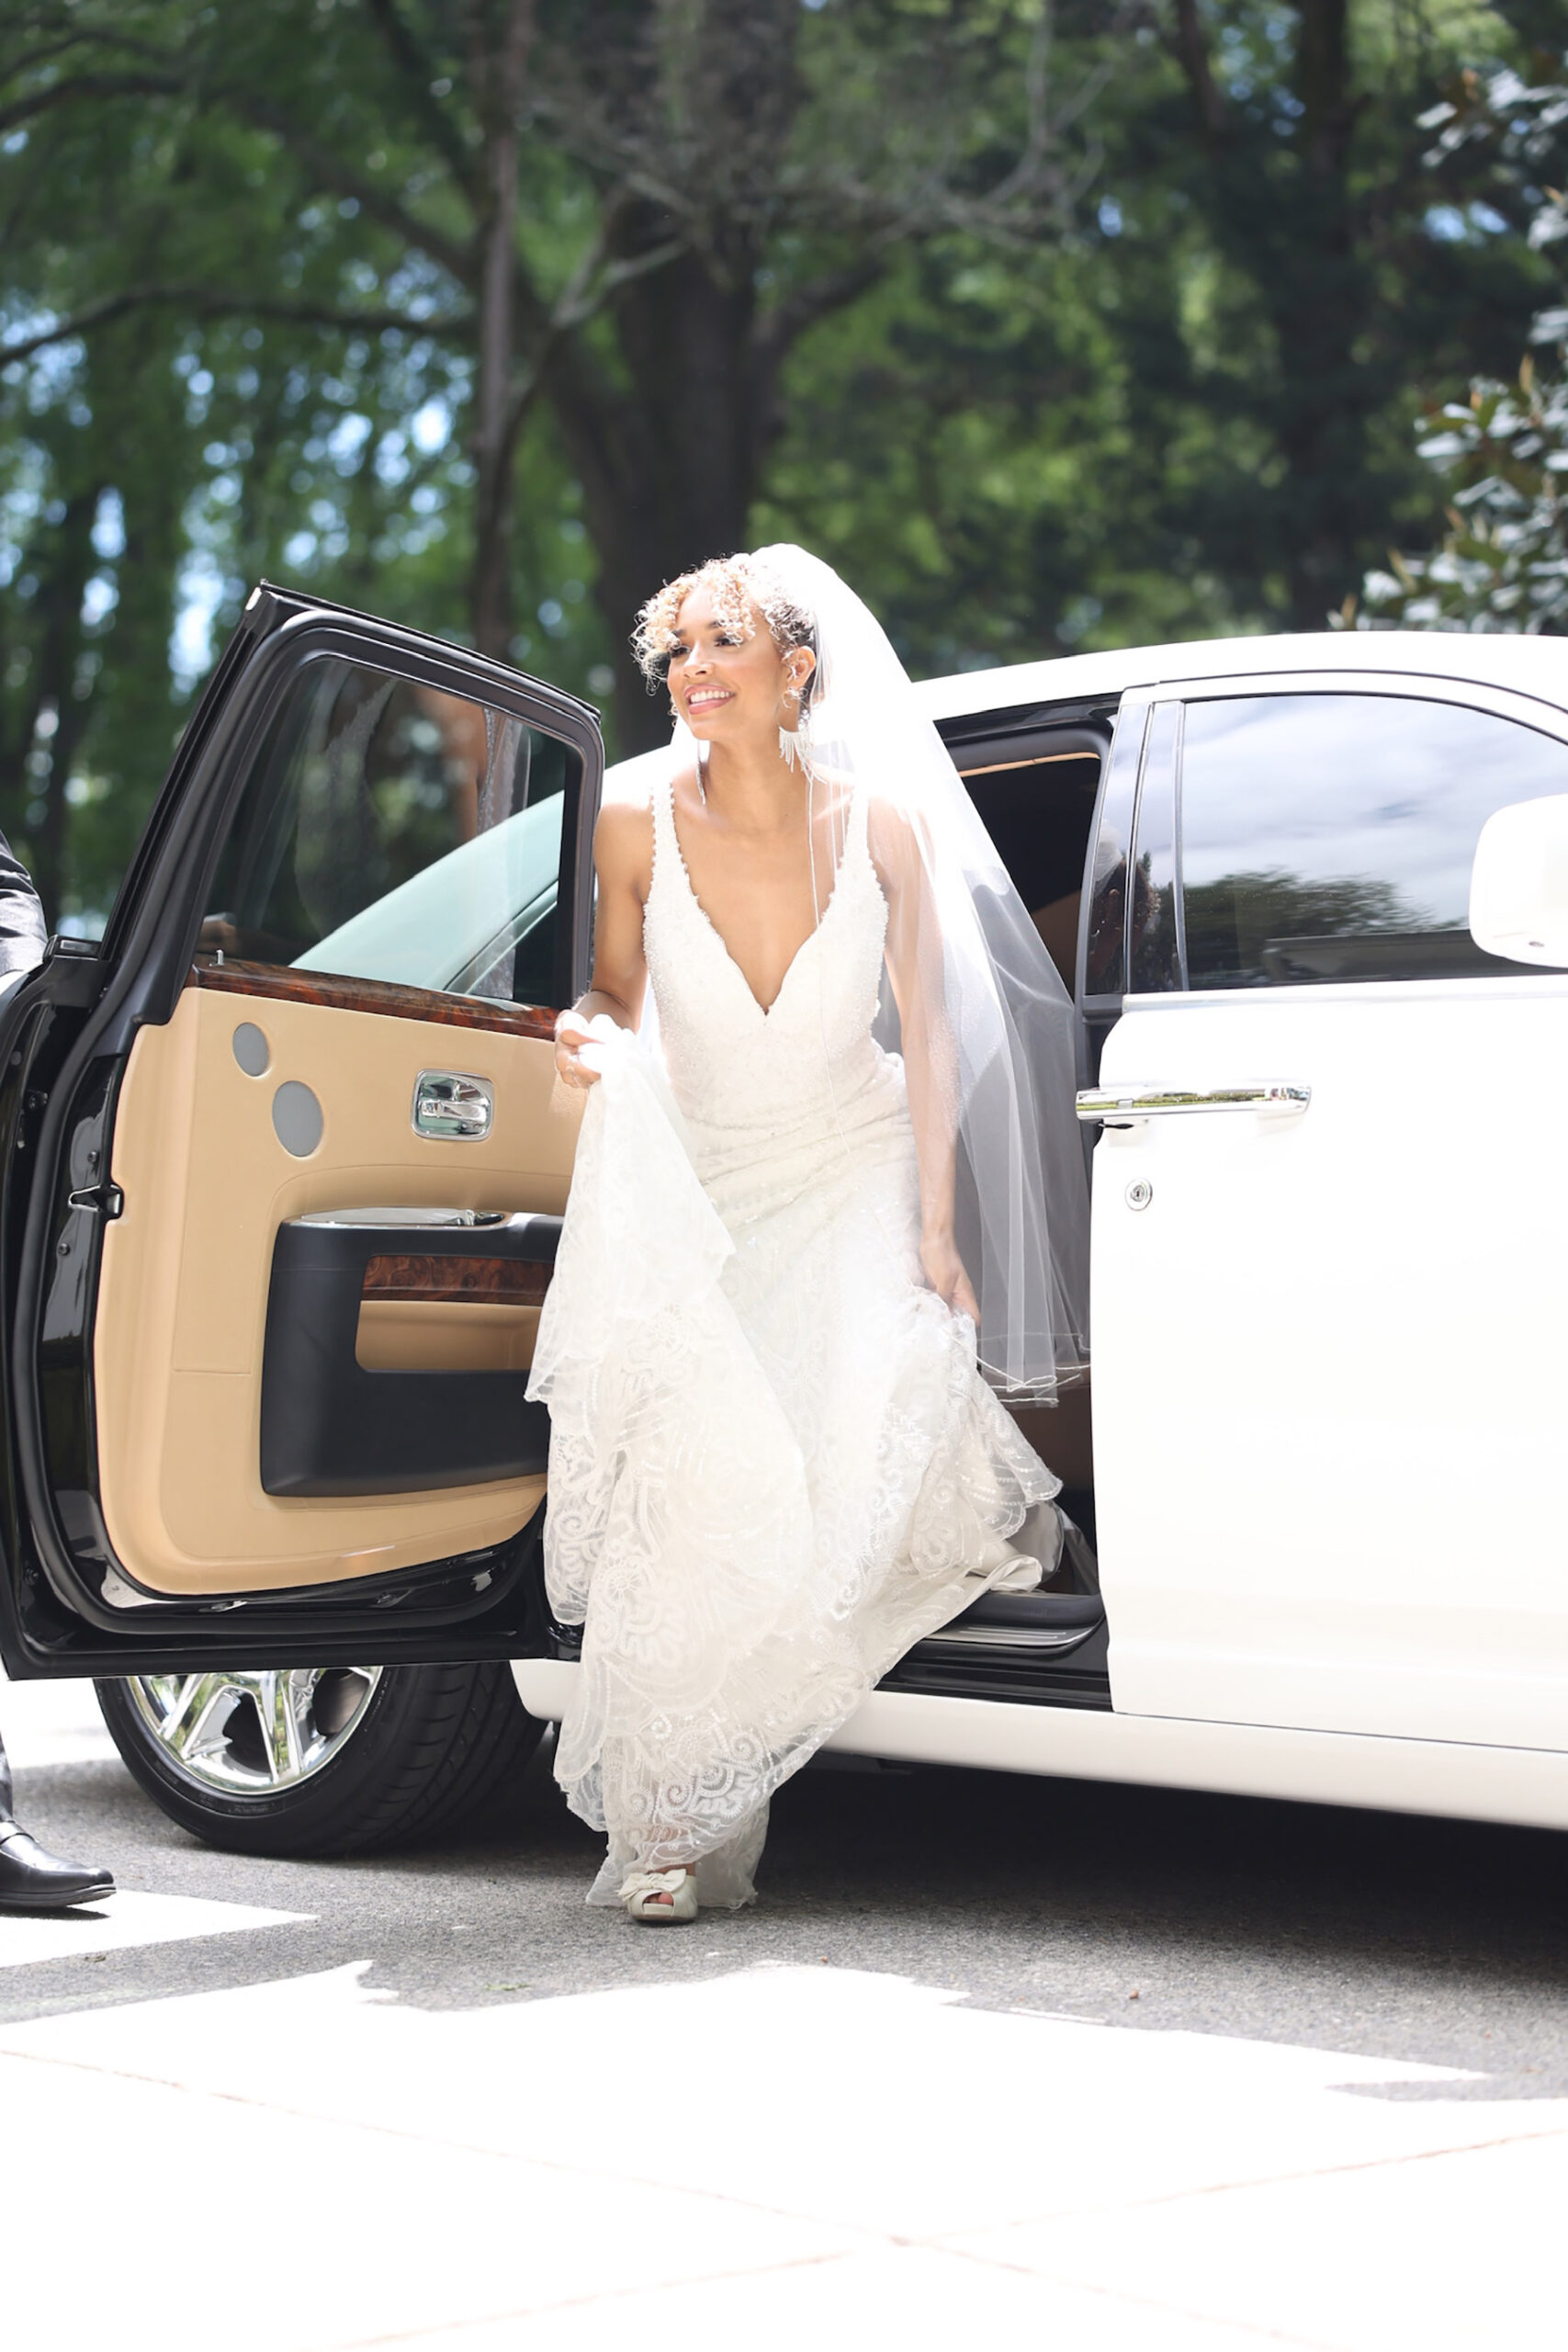 Wedding Car Rentals 15 Scaled